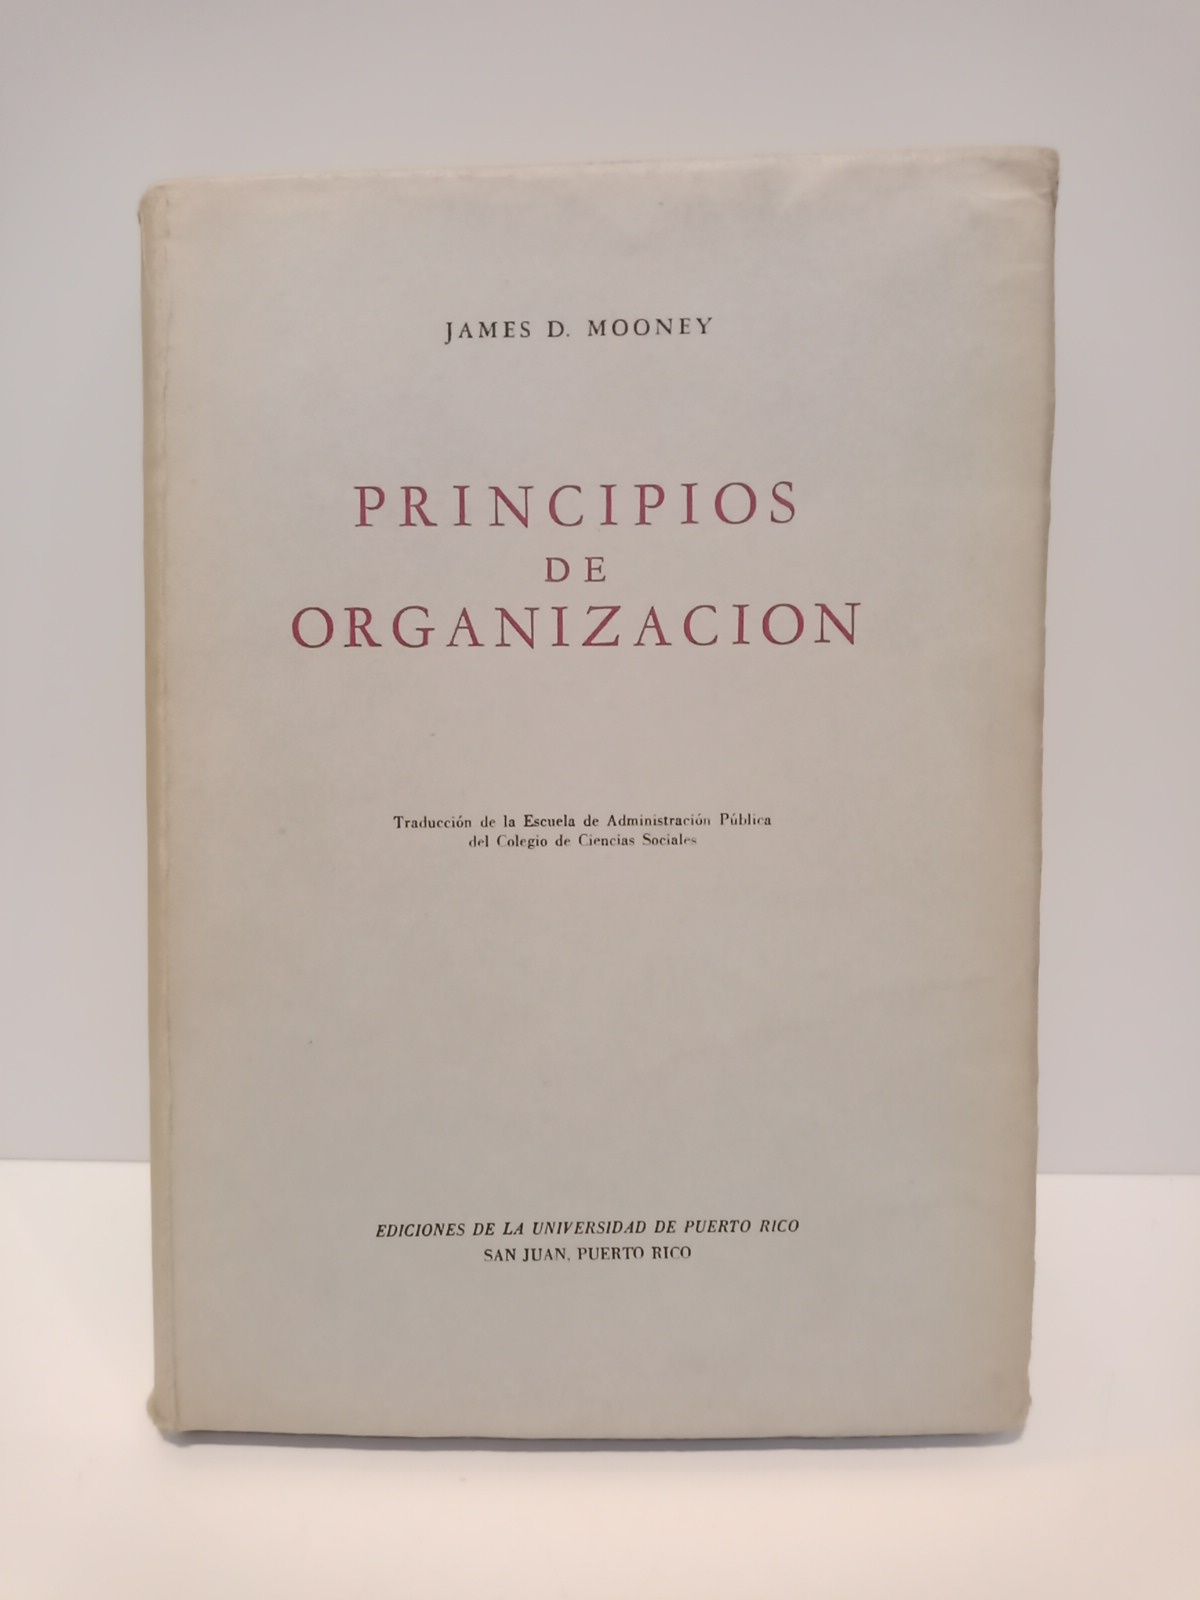 MOONEY, James D. - Principios de organizacin /  Traduc. de la Admon. Pblica del Colegio de Ciencias Sociales